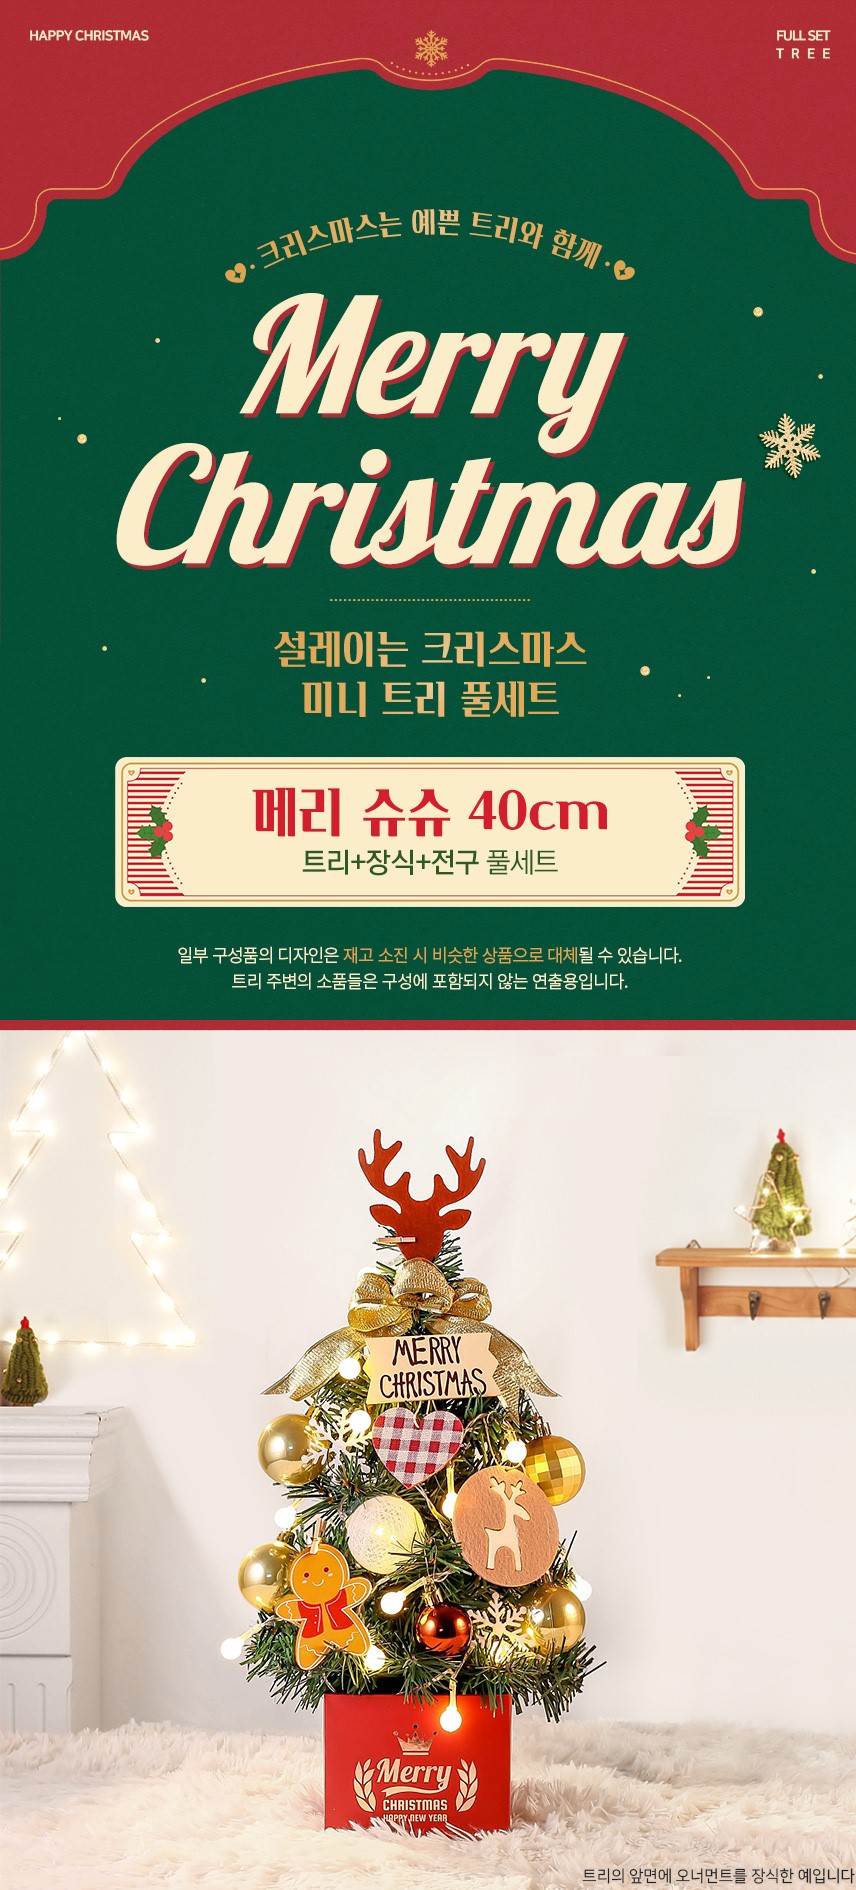 韓國食品-크리스마스 선물세트! 메리 슈슈 완제 트리 (전구포함) 40cm